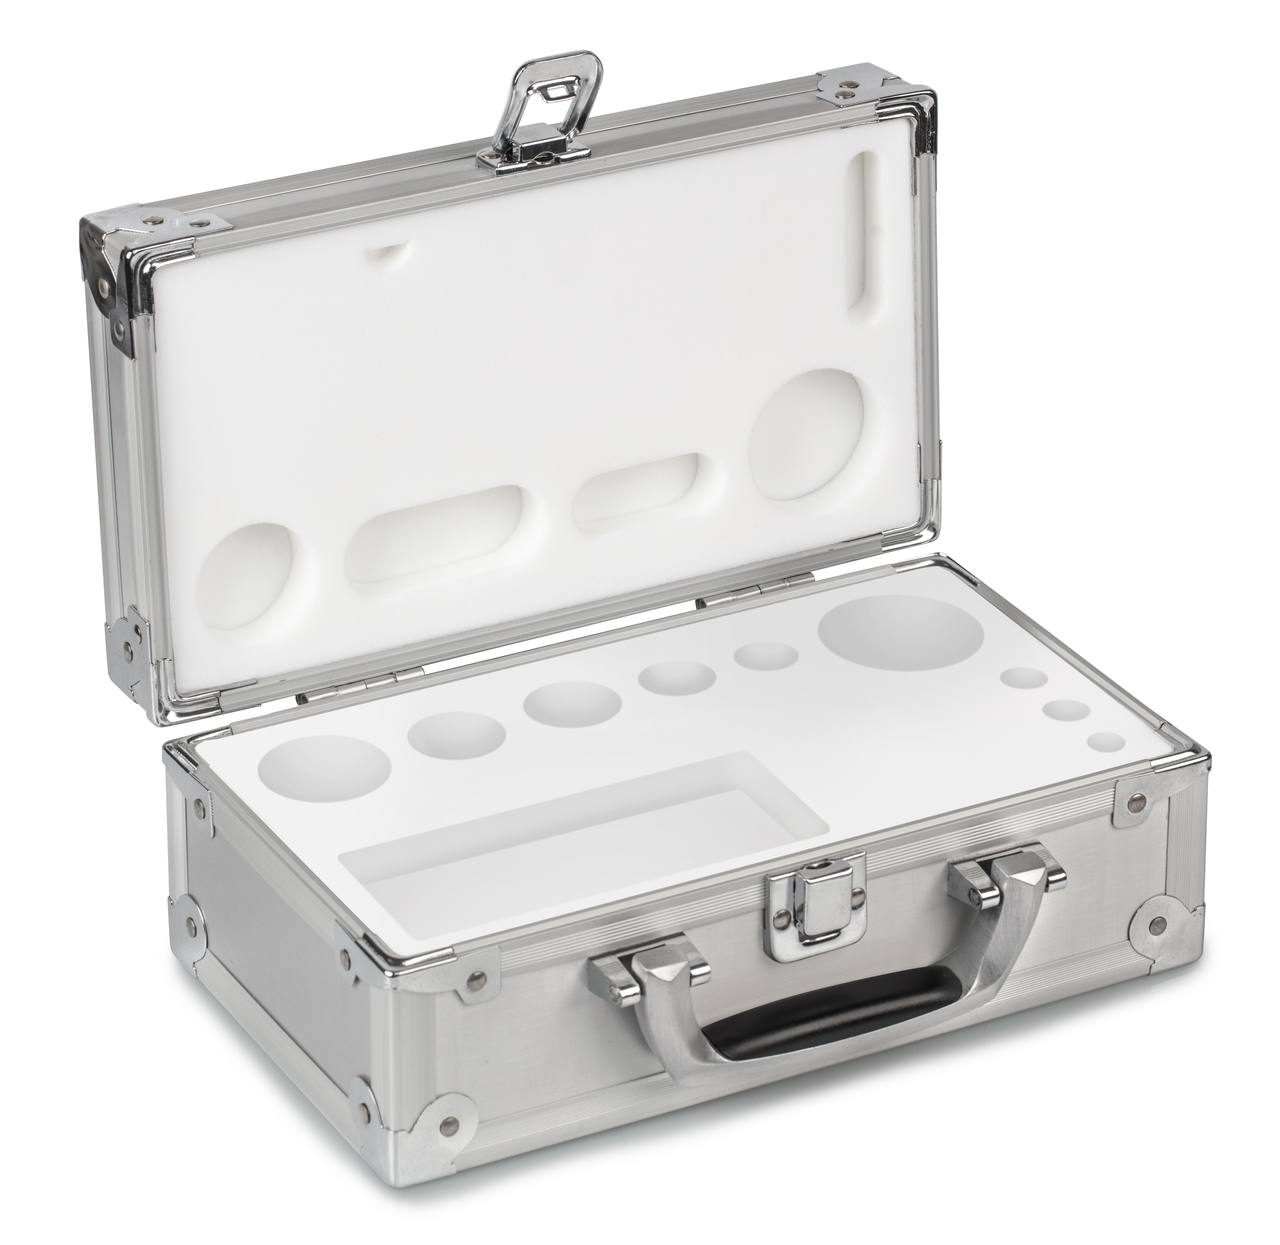 Aluminiumgeschützter Koffer auf weißem Hintergrund. Das innere ist weiß und leer. Im inneren kann man auch mehrere Vertiefungen sehen die für Gewichte gedacht sind.